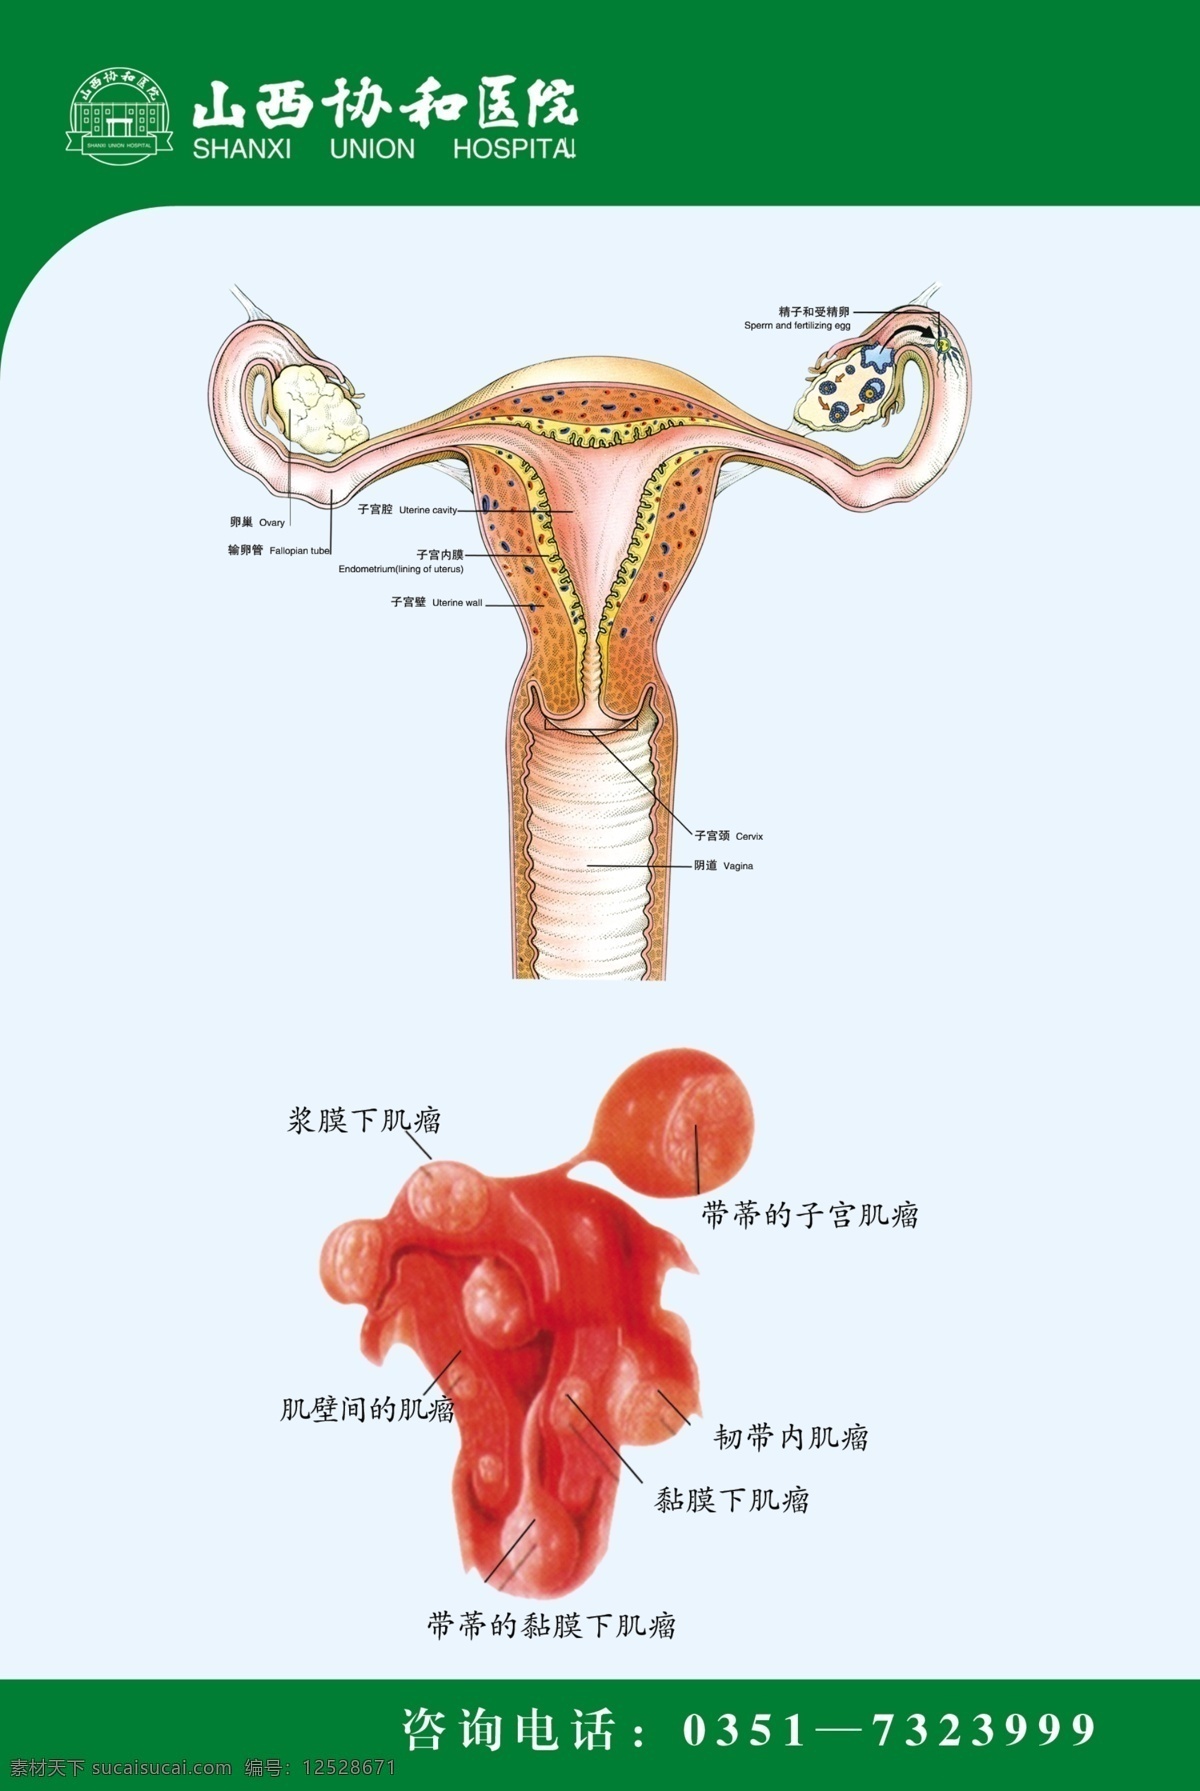 生殖解剖图 生殖 解剖图 输卵管 子宫 妇科 肌瘤 子宫疾病 不孕 医院展板 展板模板 广告设计模板 源文件